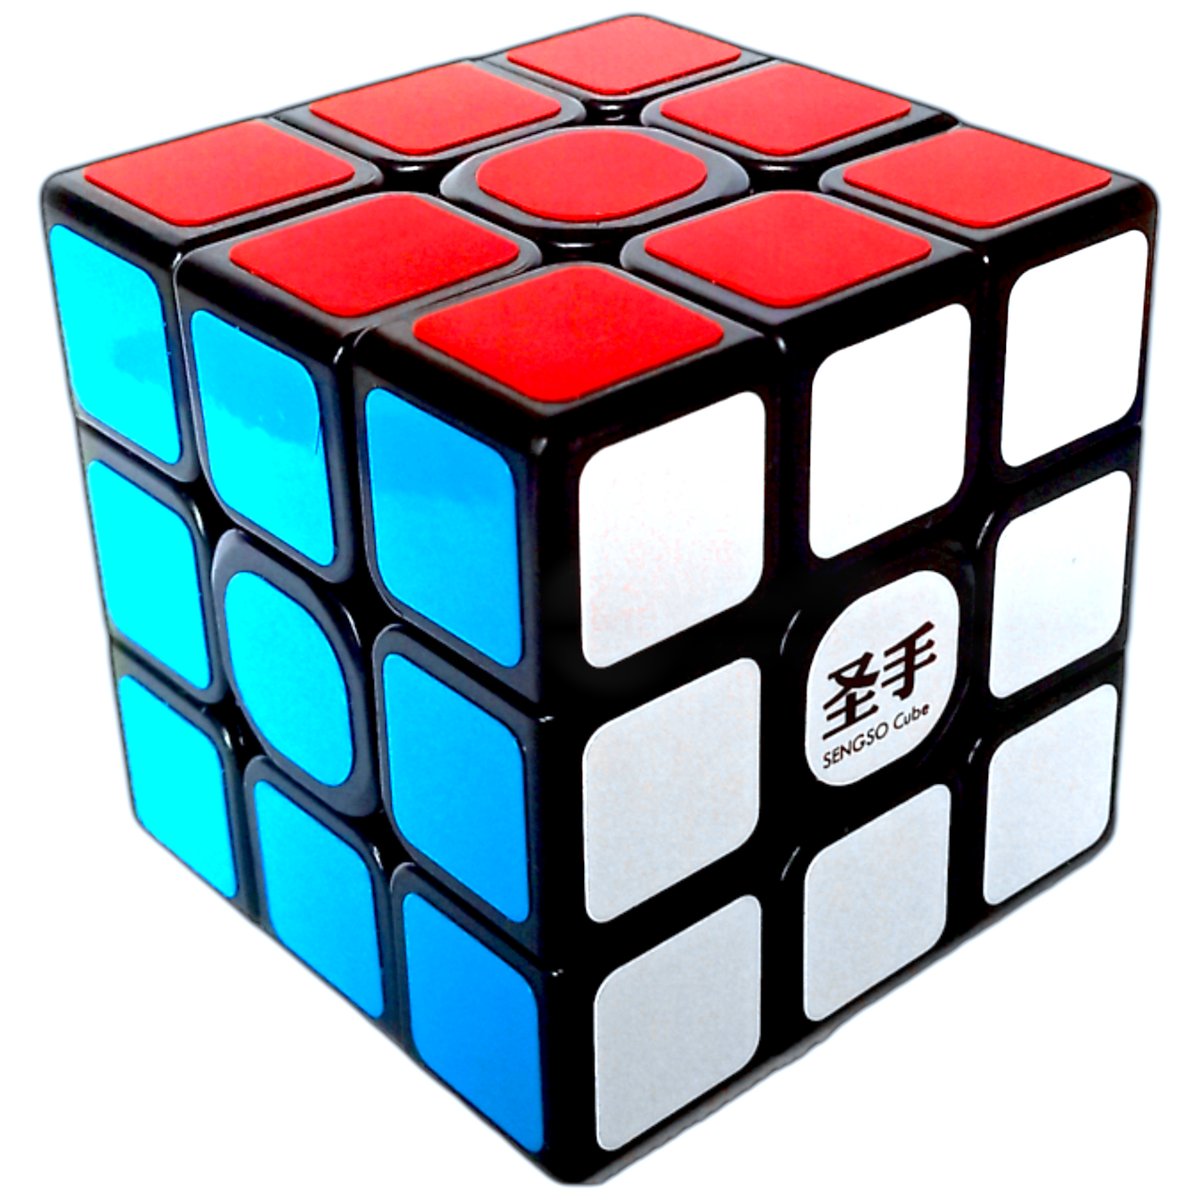 Nowa Profesjonalnie Wyregulowana Kostka 3X3X3 Shengshou Legend S + Podstawka Rubika + Super Brelok 3D